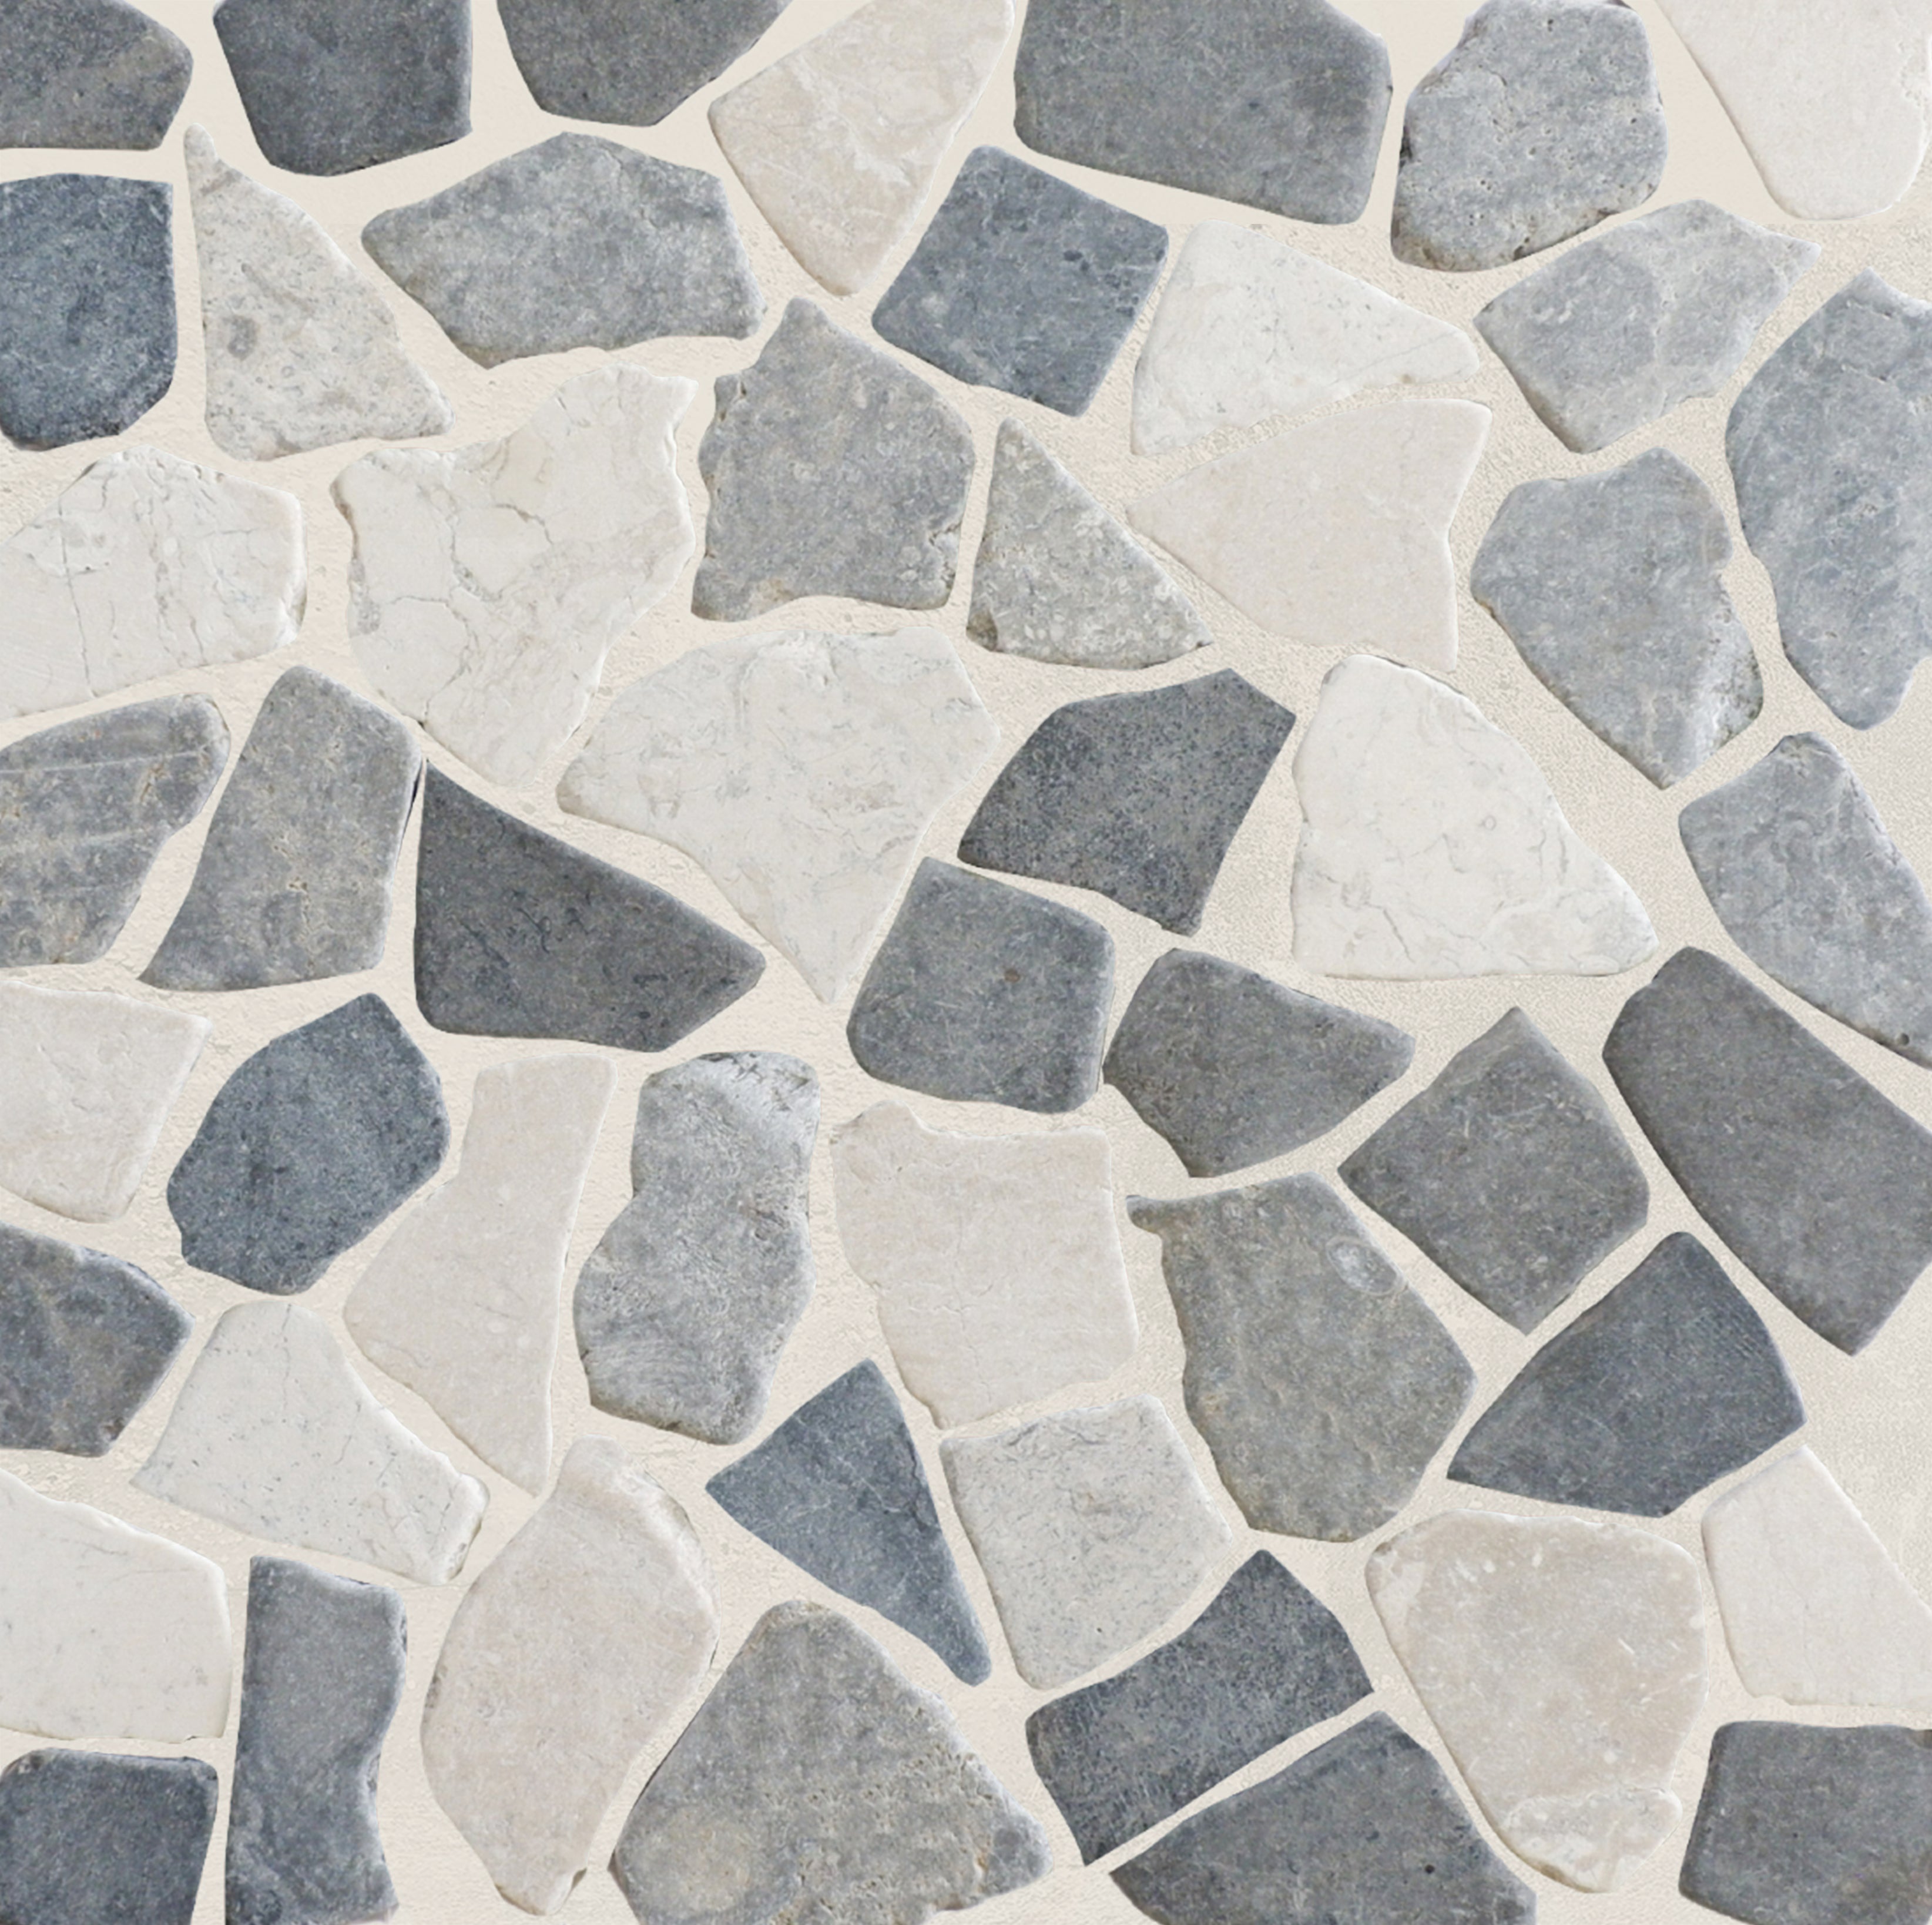 Awan tile sample closeup with grout